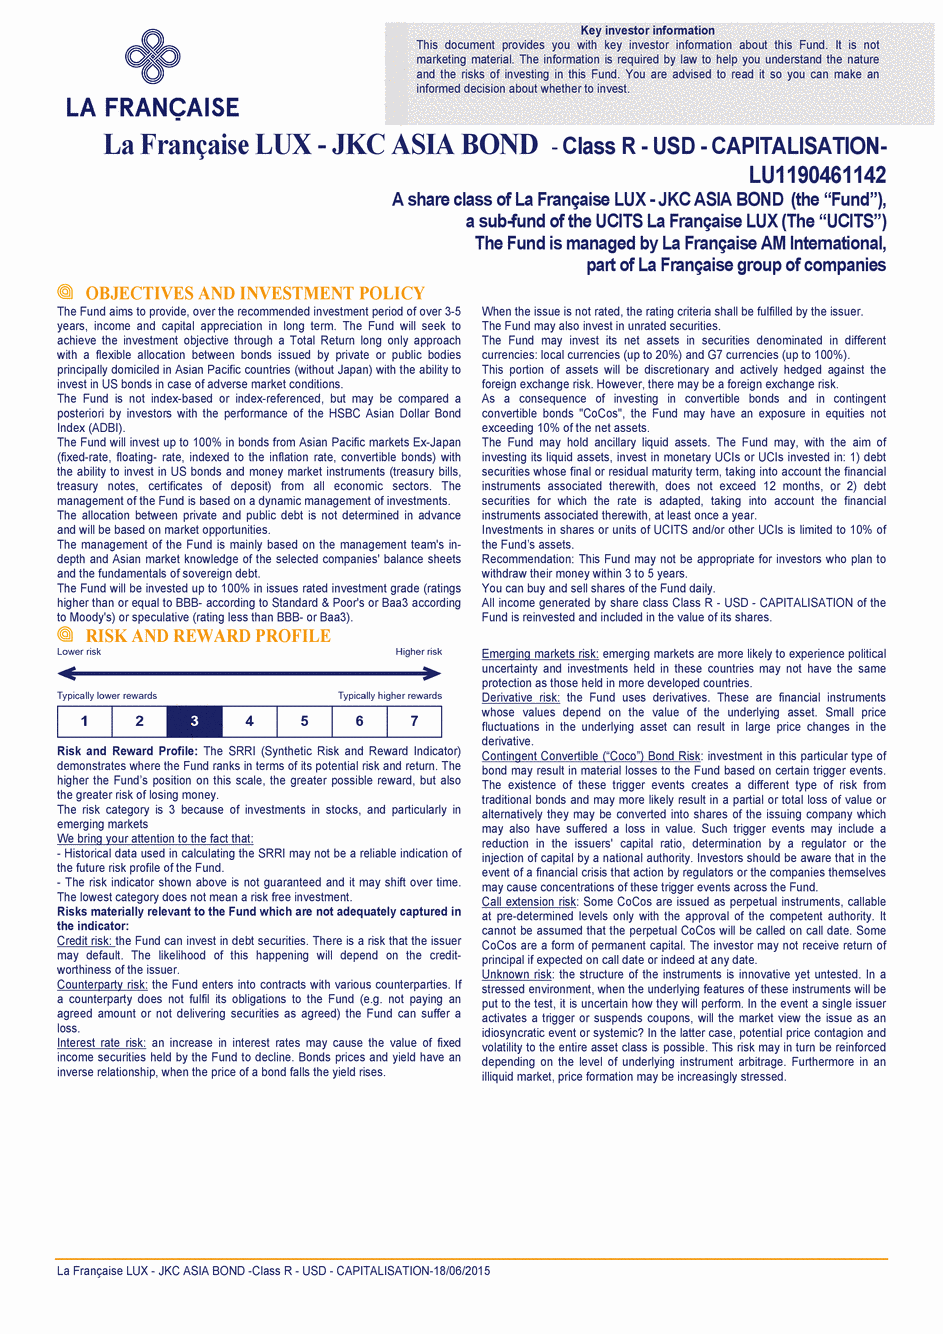 DICI La Française LUX - JKC Asia Bond - Class R (C) USD - 18/06/2015 - Anglais